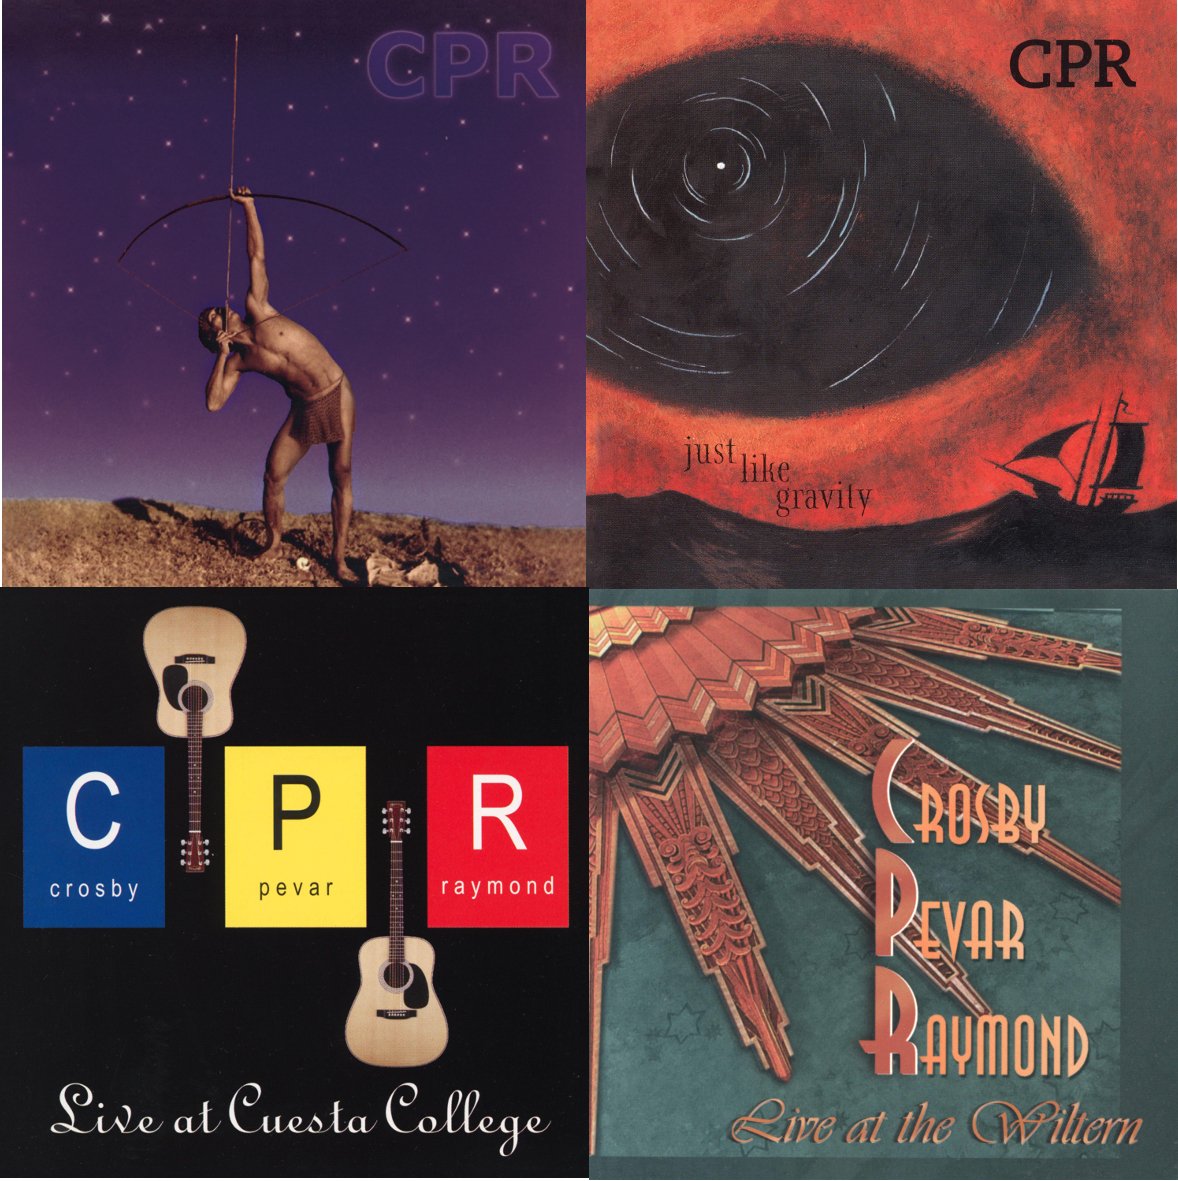 David Crosby ristampa quattro album del suo catalogo